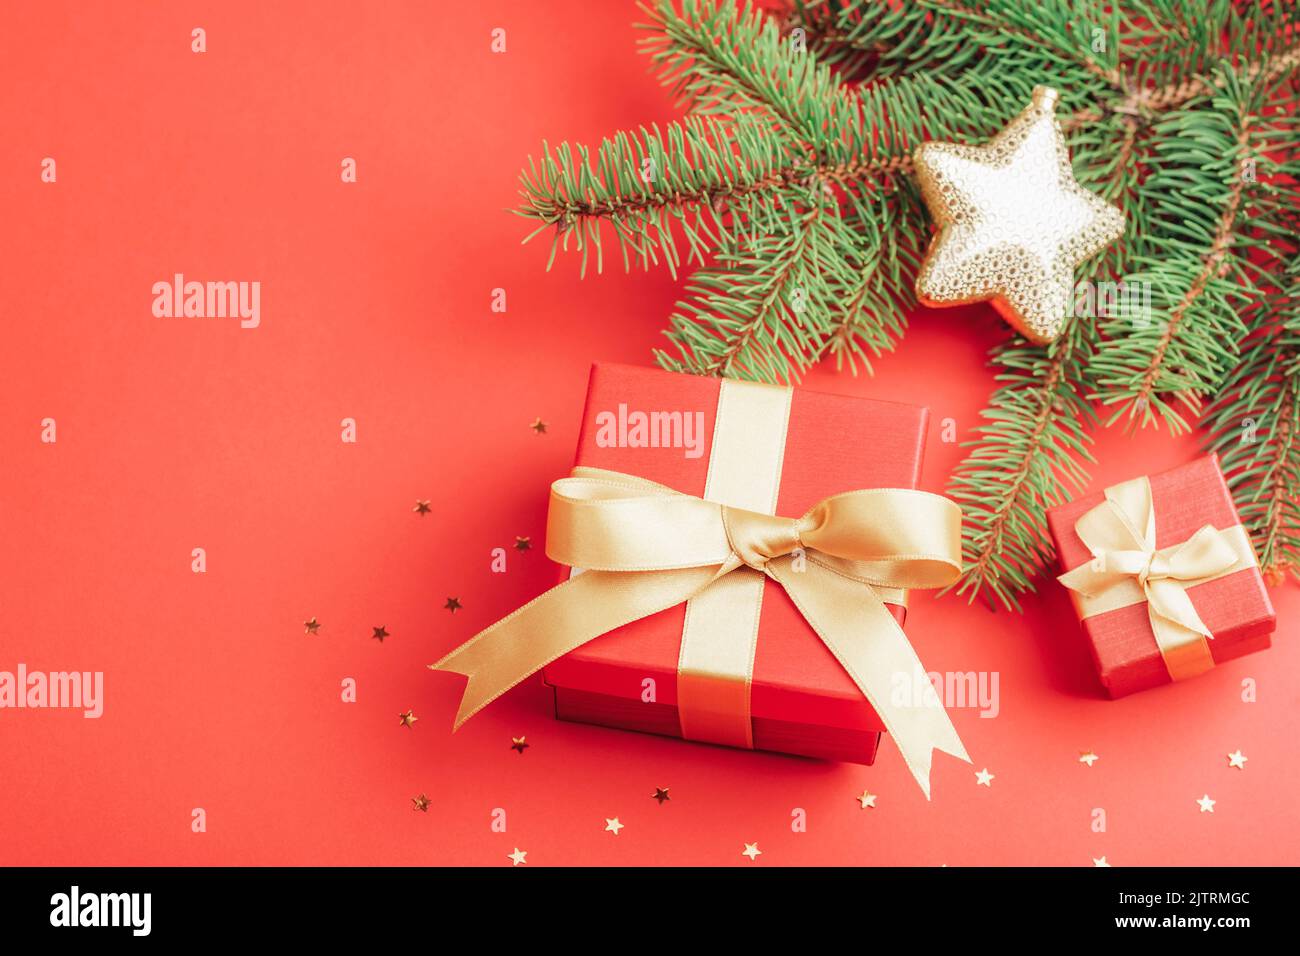 Piatto natalizio con scatole regalo rosse e rami di abete, confetti dorati su sfondo rosso. Vista dall'alto, spazio di copia. Foto Stock